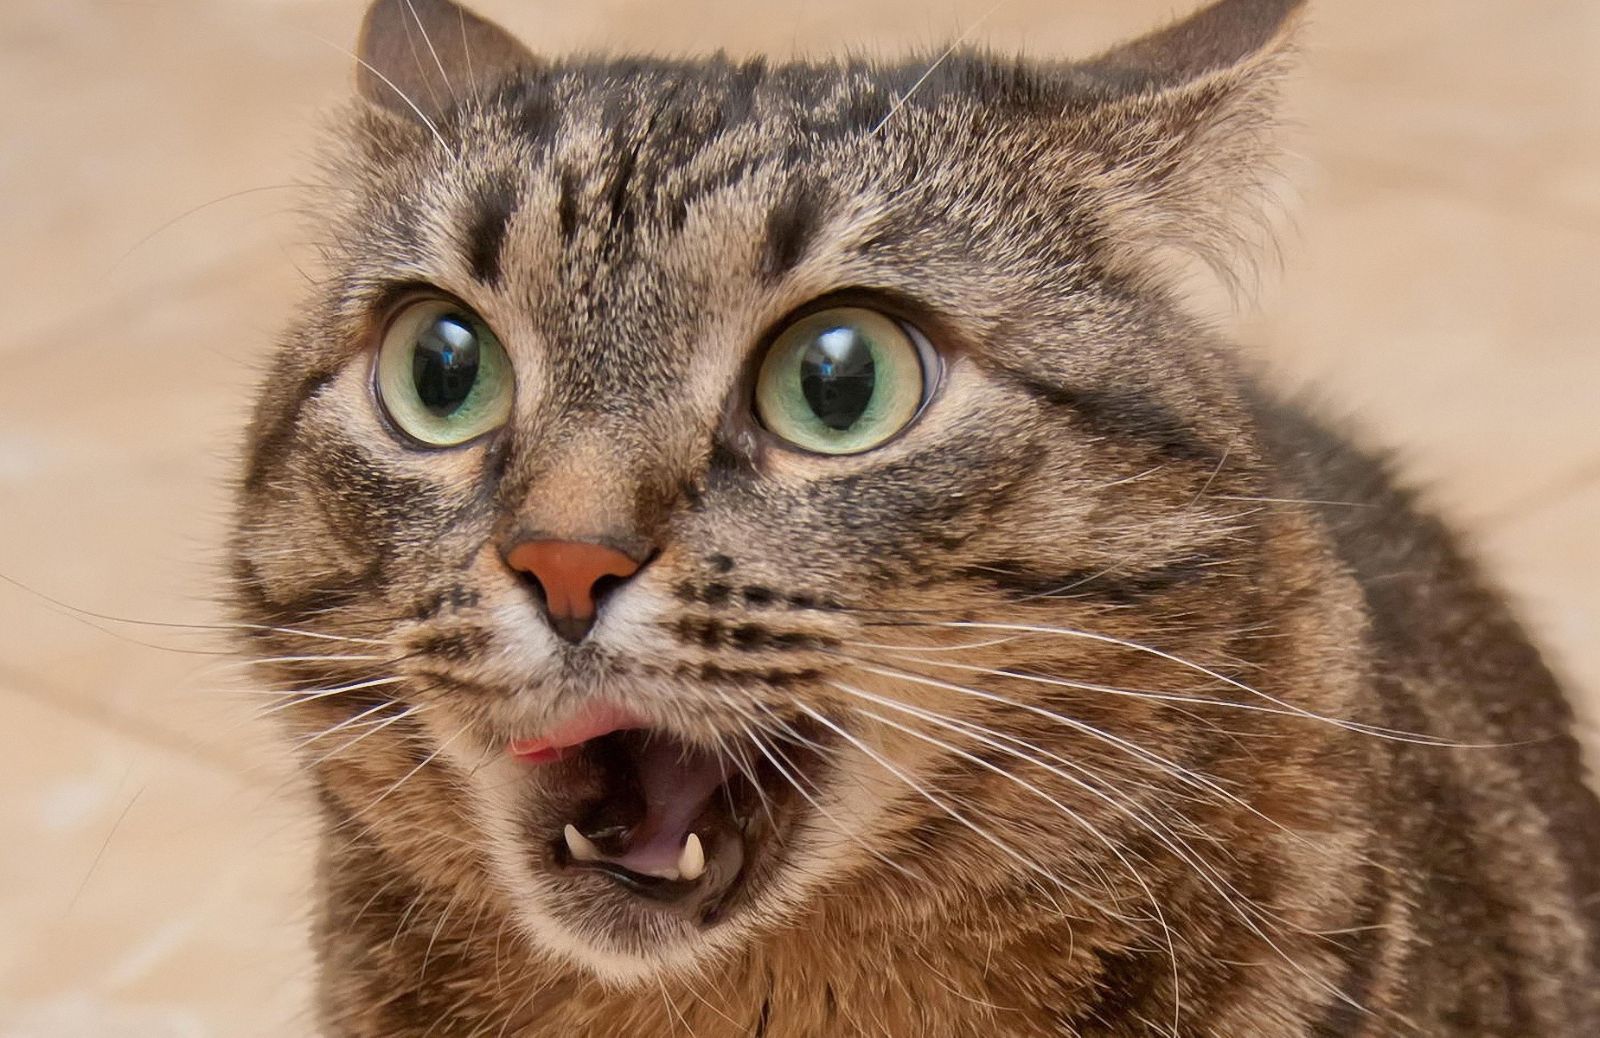 Gatti terrorizzati dai cetrioli: ecco perché